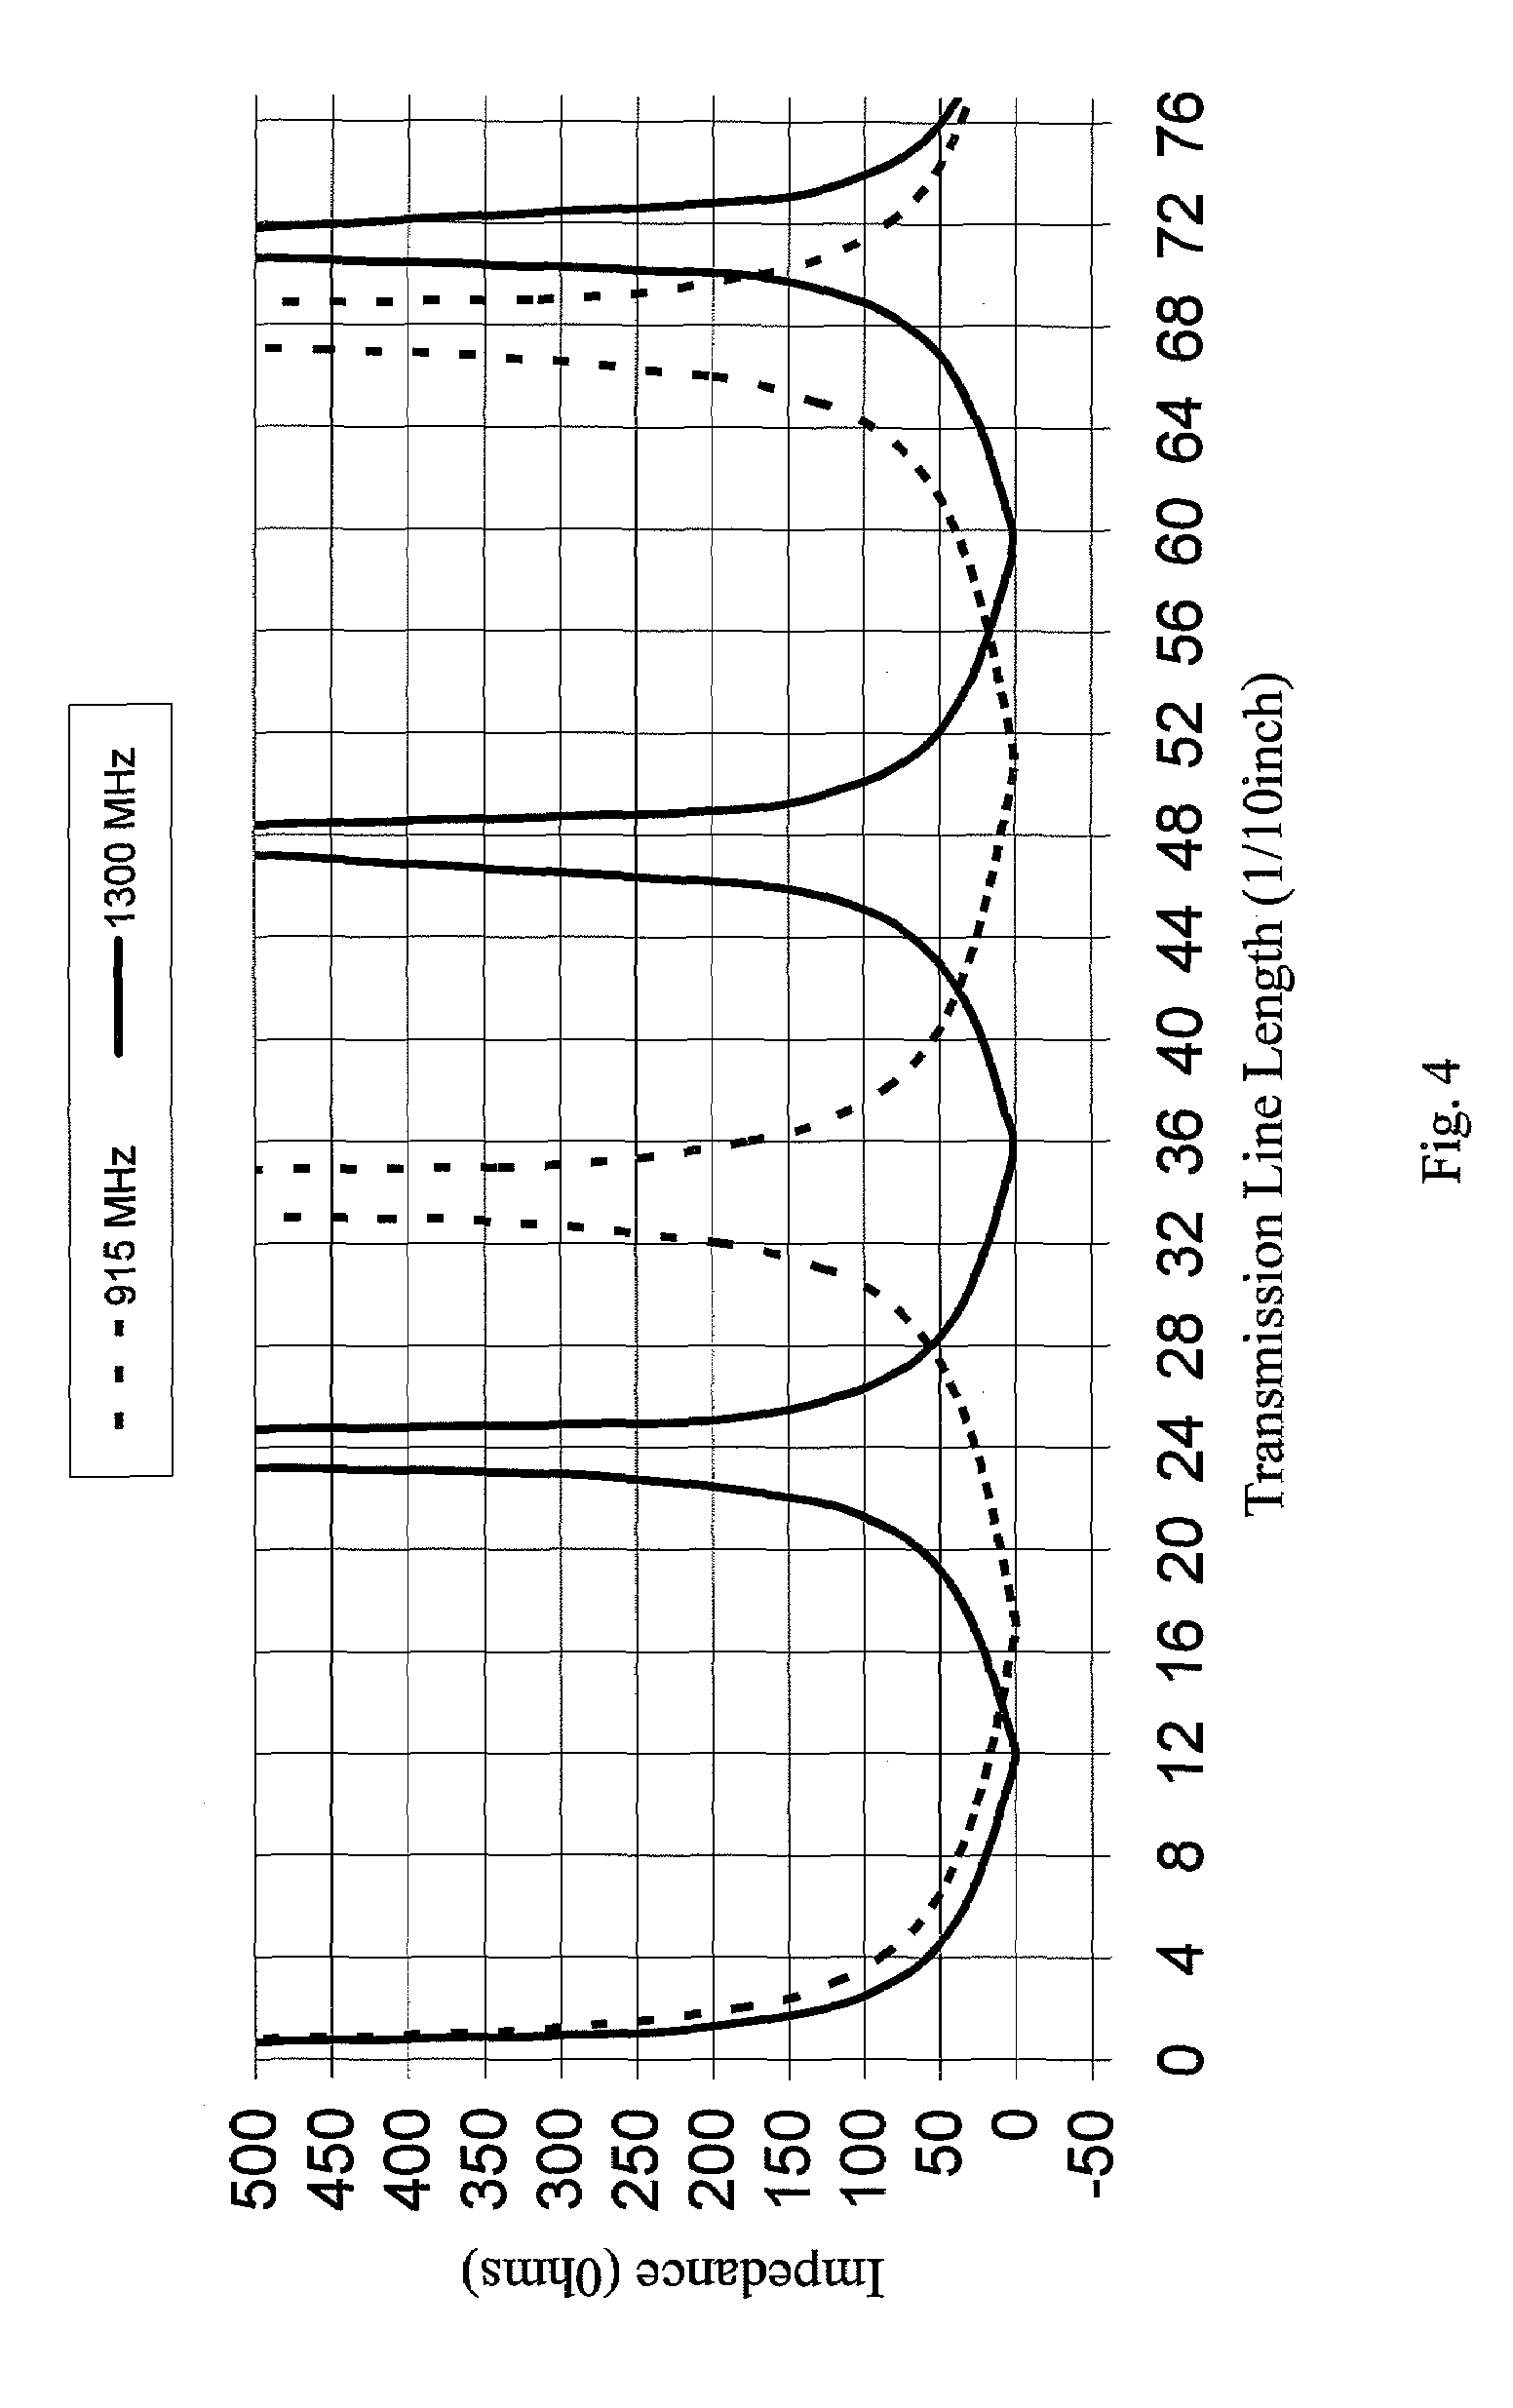 Transmission line notch filter